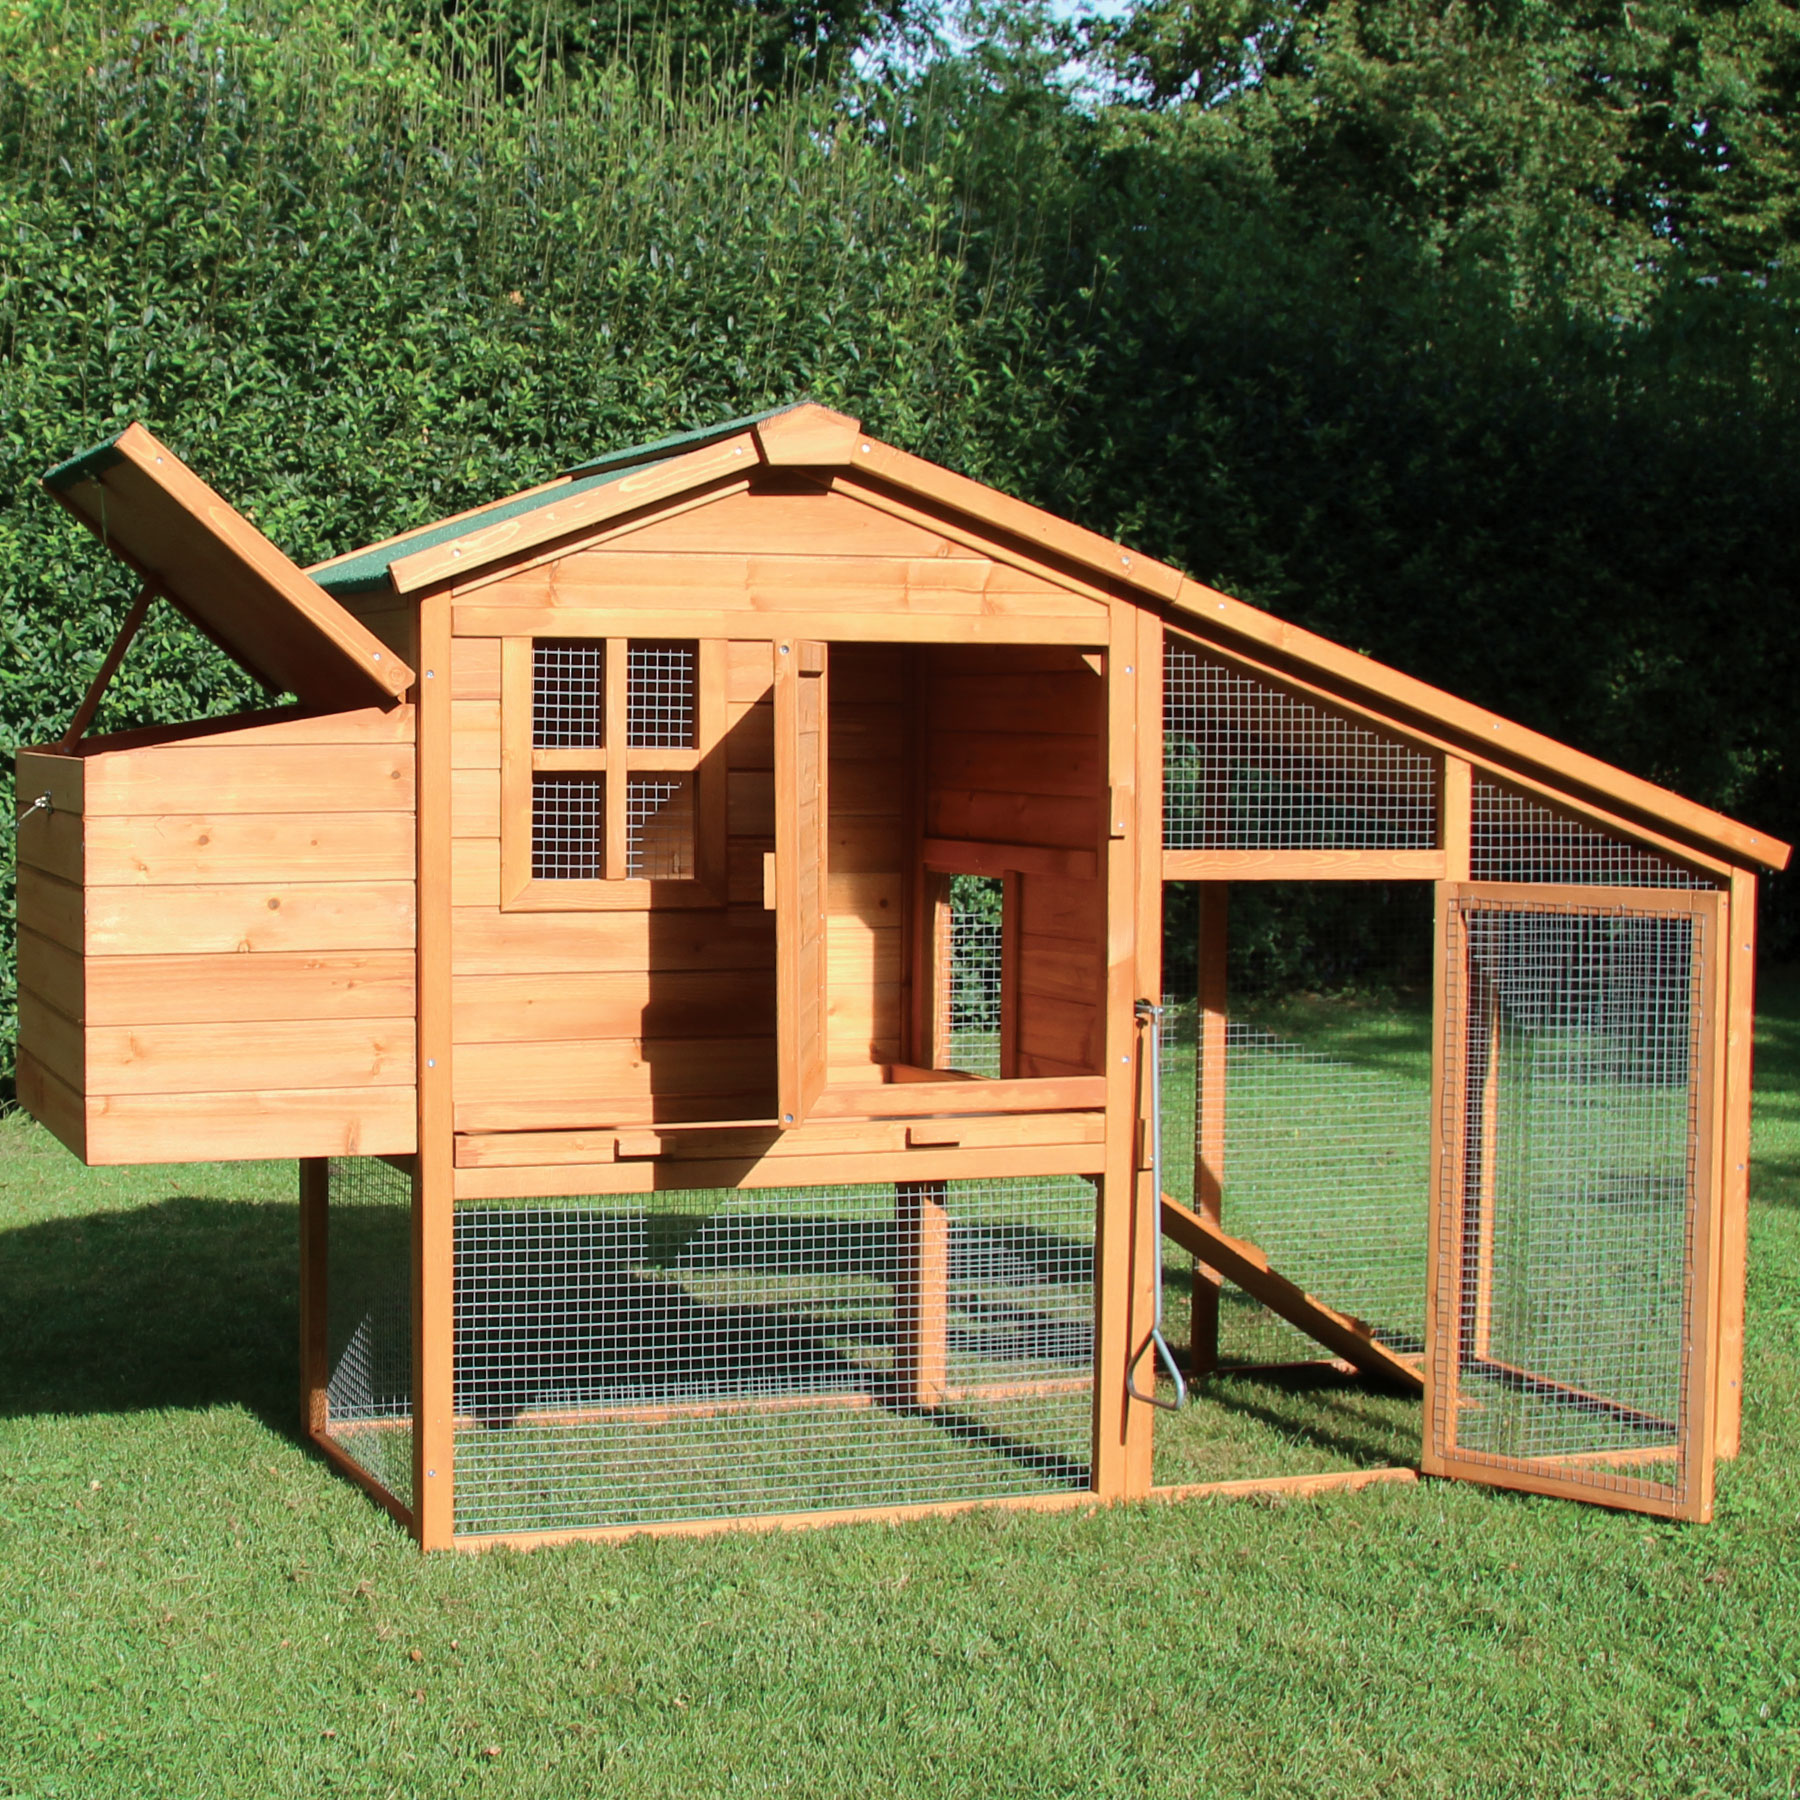 Hühnerhaus / Hasenhaus "Bertha“ - Unterschlupf für Hühner, Hasen, Wachteln, Kleintiere